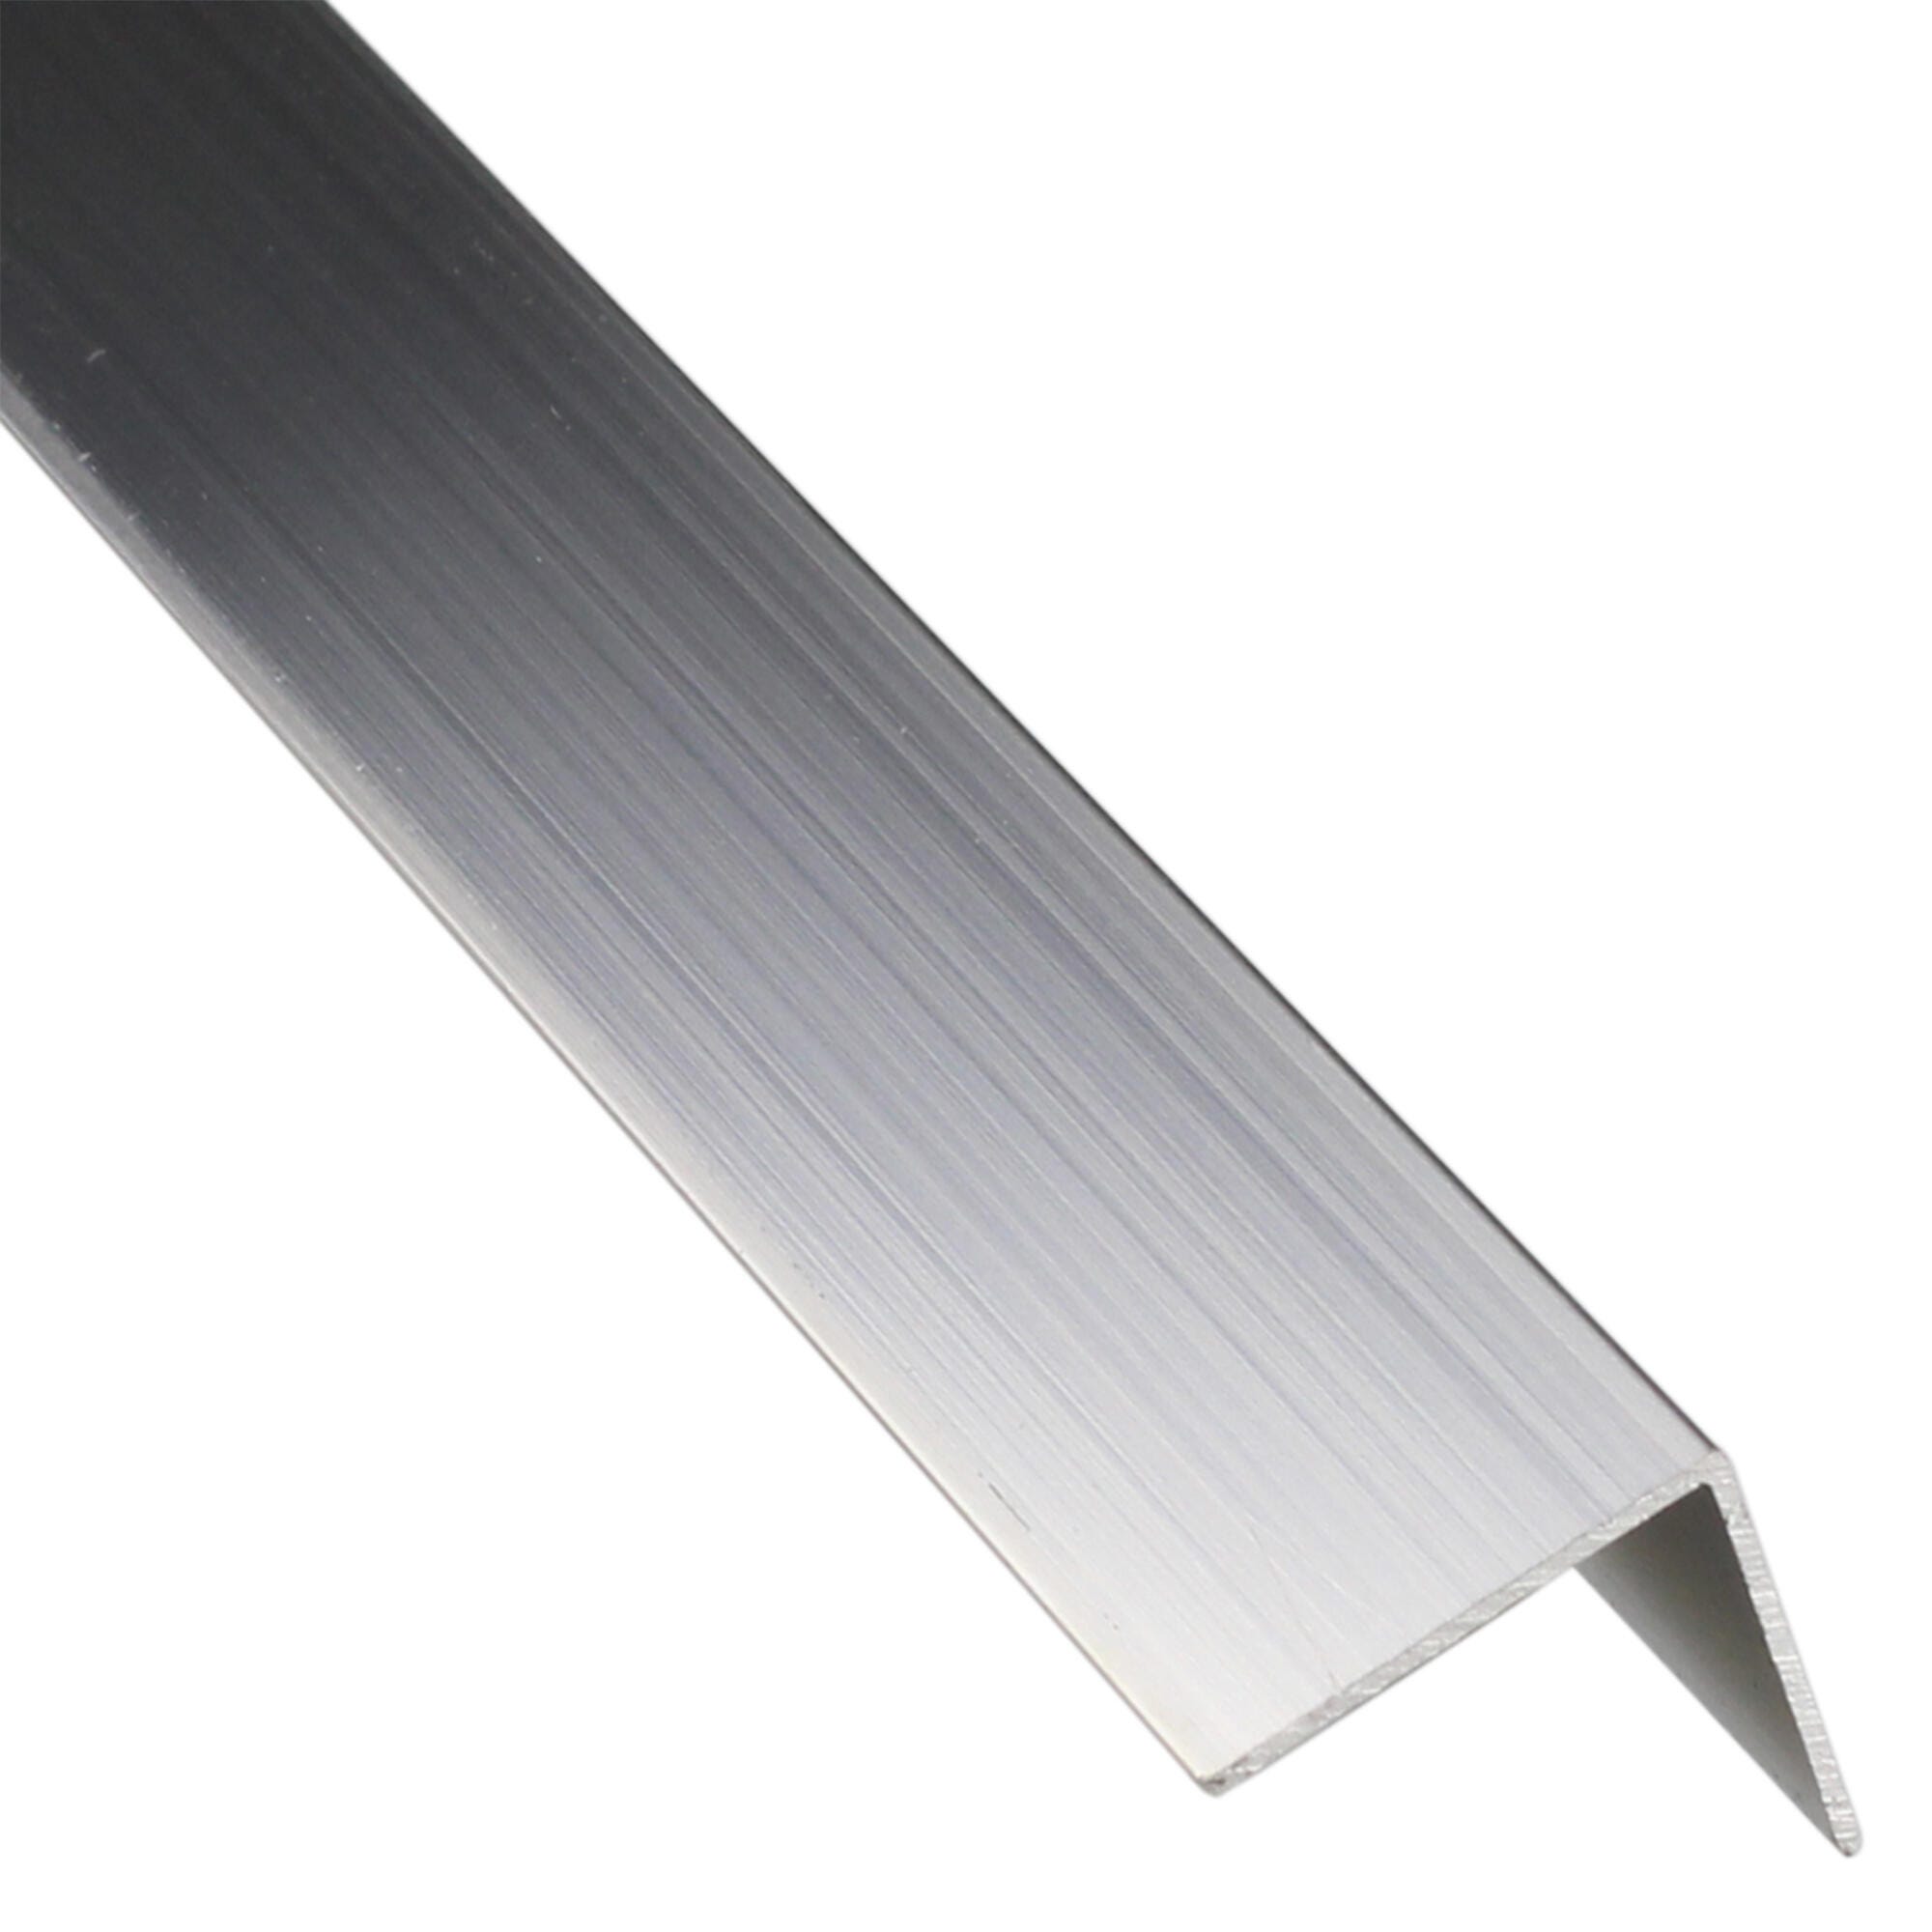 Profilo angolare simmetrico STANDERS in alluminio grigio L 1 m 6x6